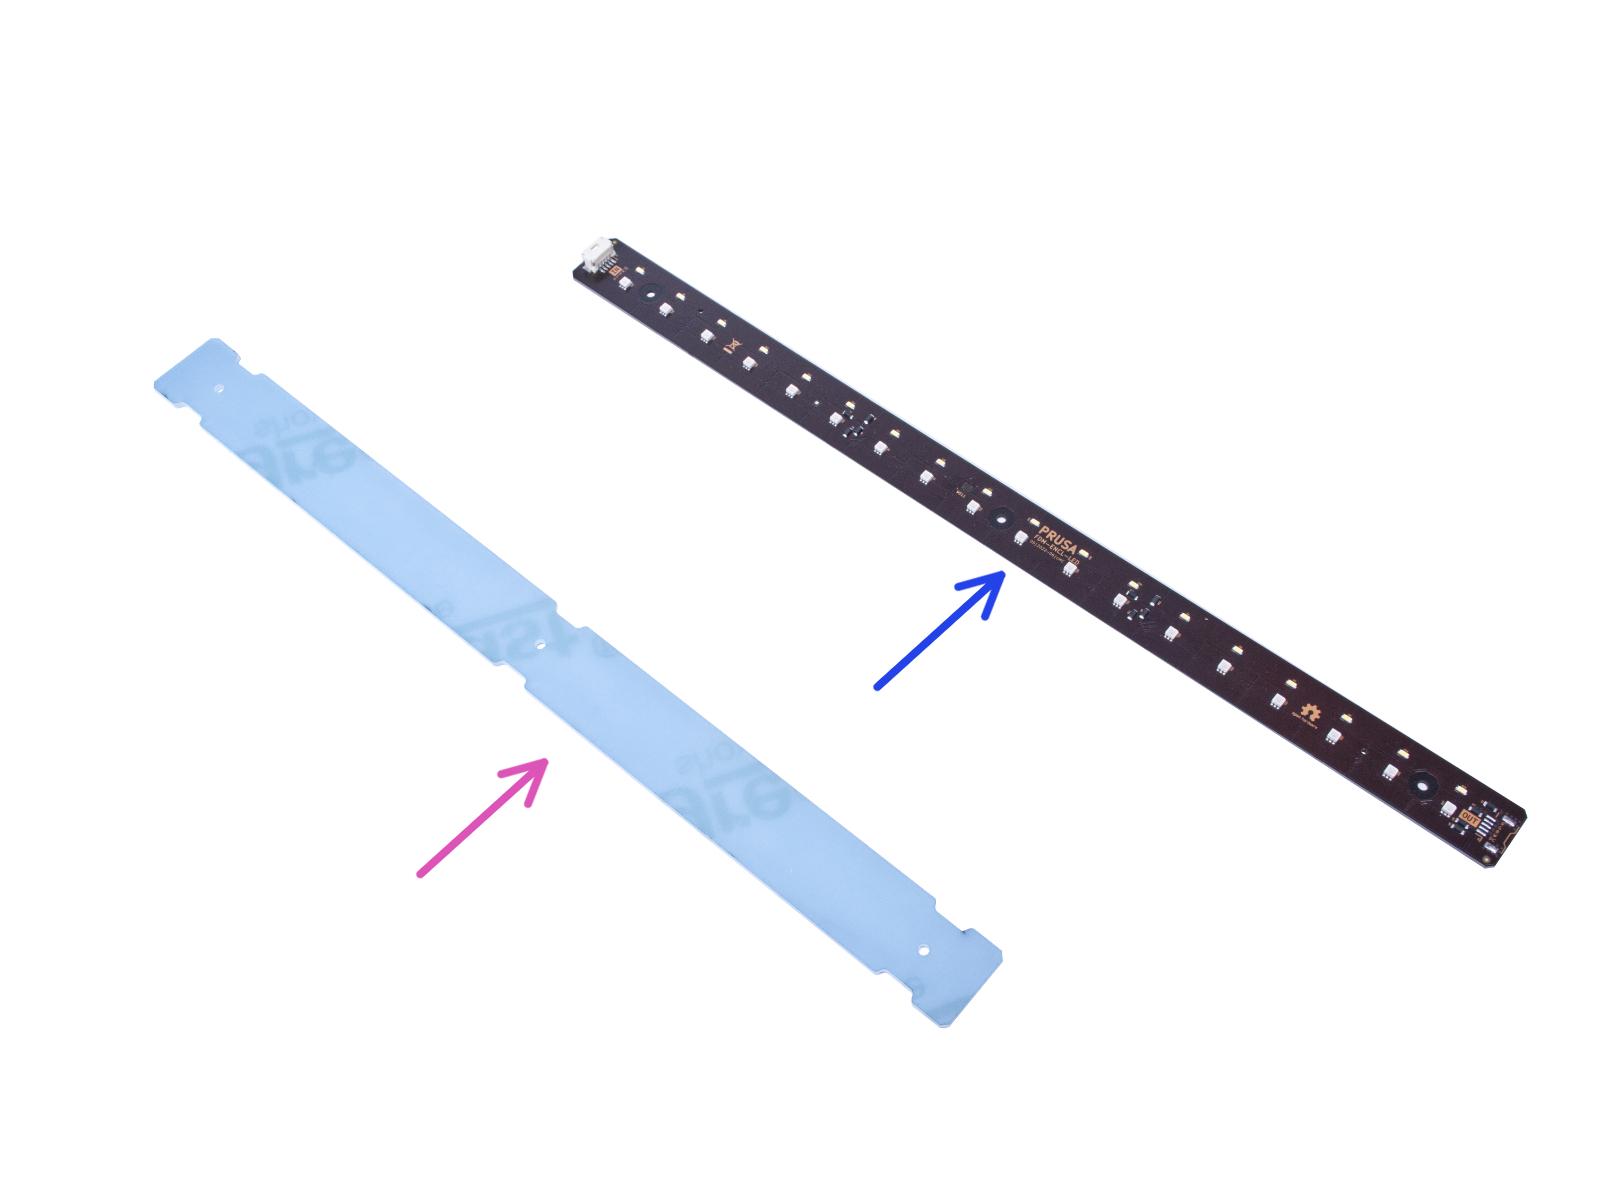 Sestavení LED pásku: příprava dílů